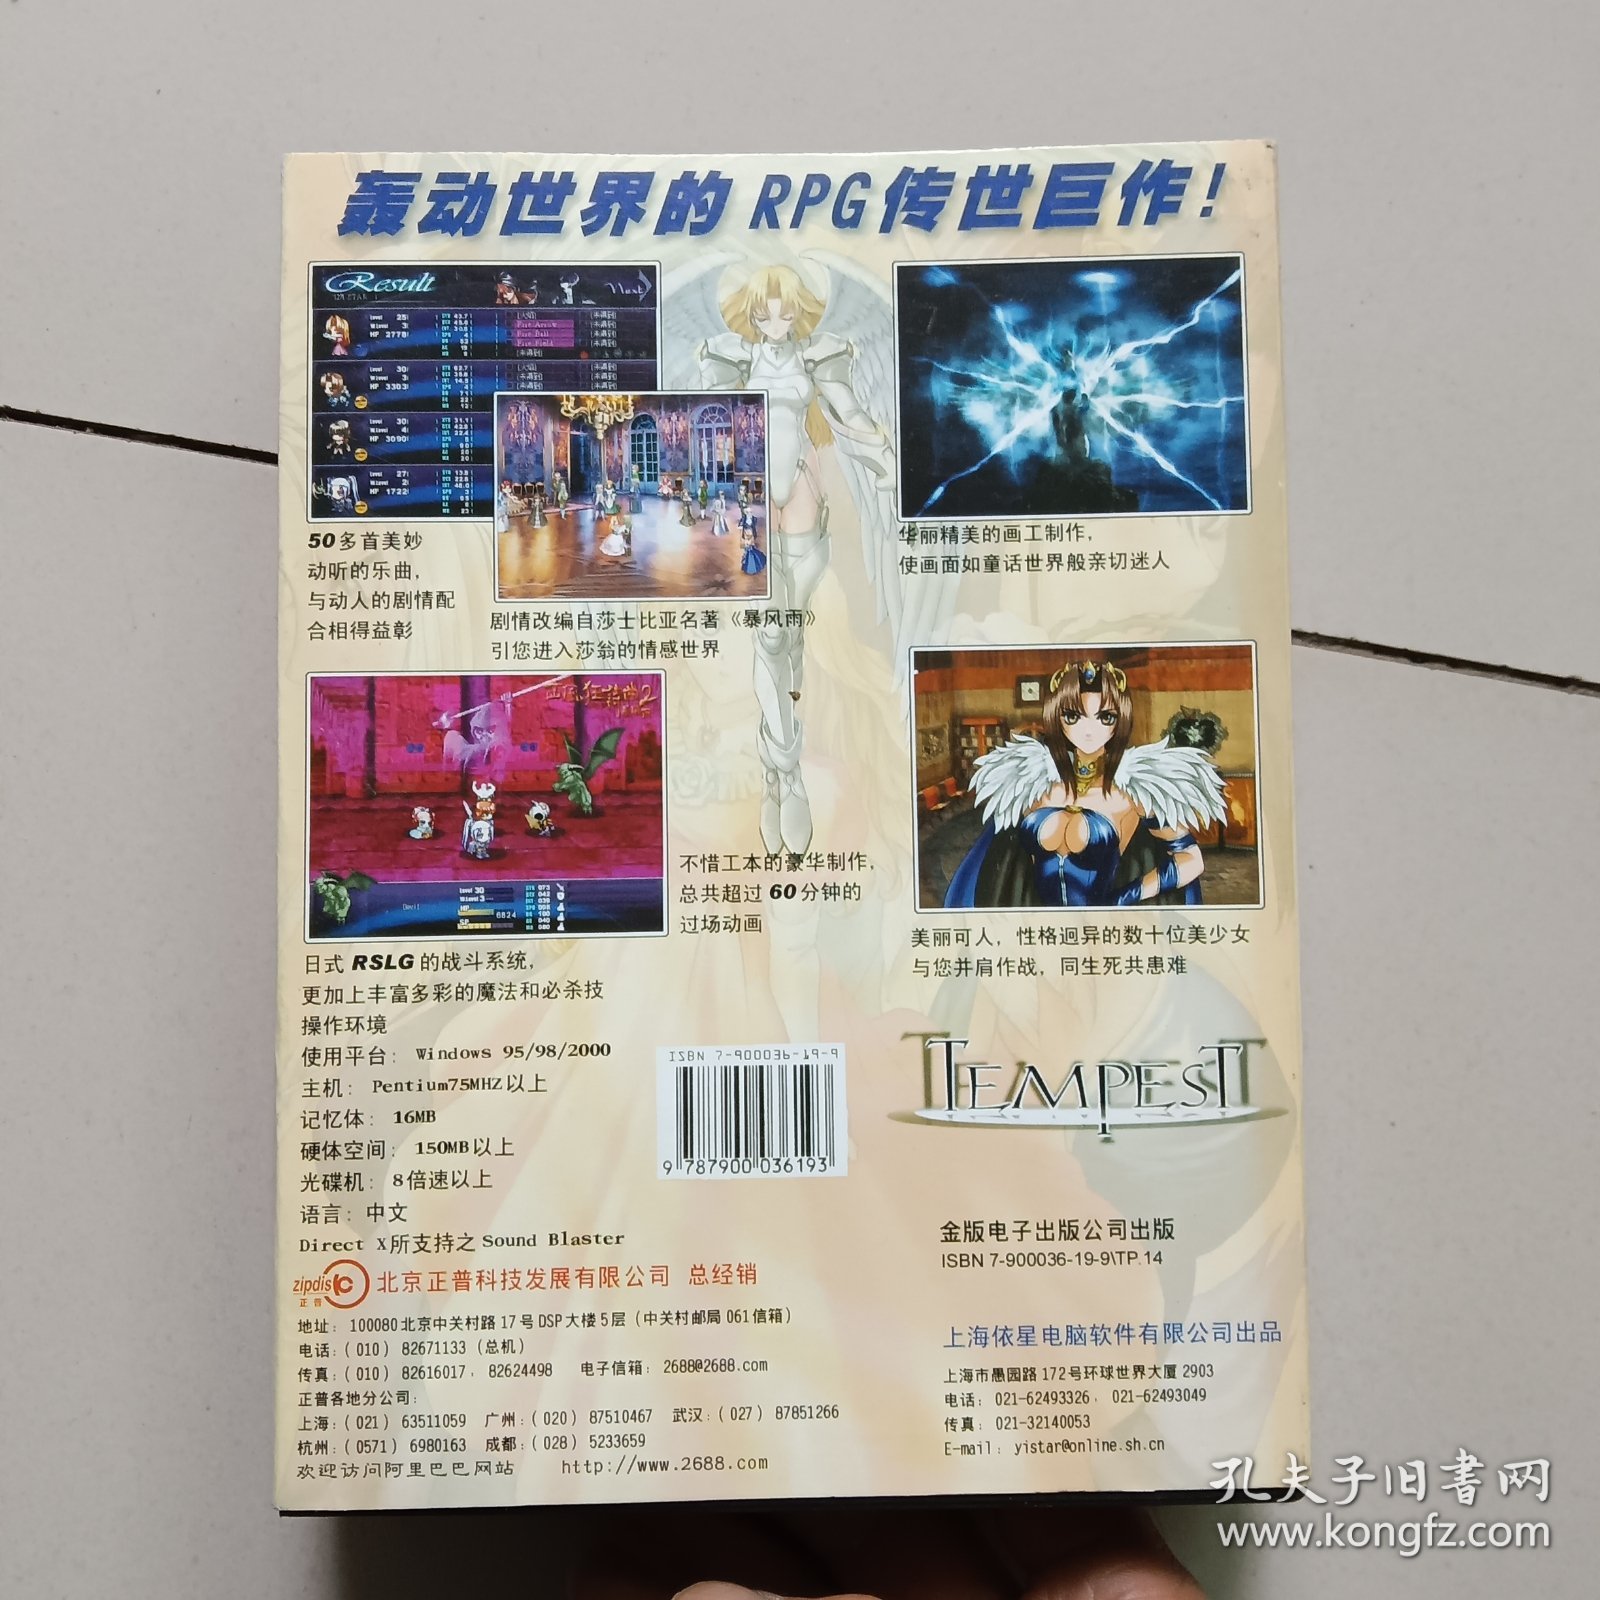 【游戏类】西风狂诗曲2 暴风雨 简体中文版（4CD+1册游戏指南）